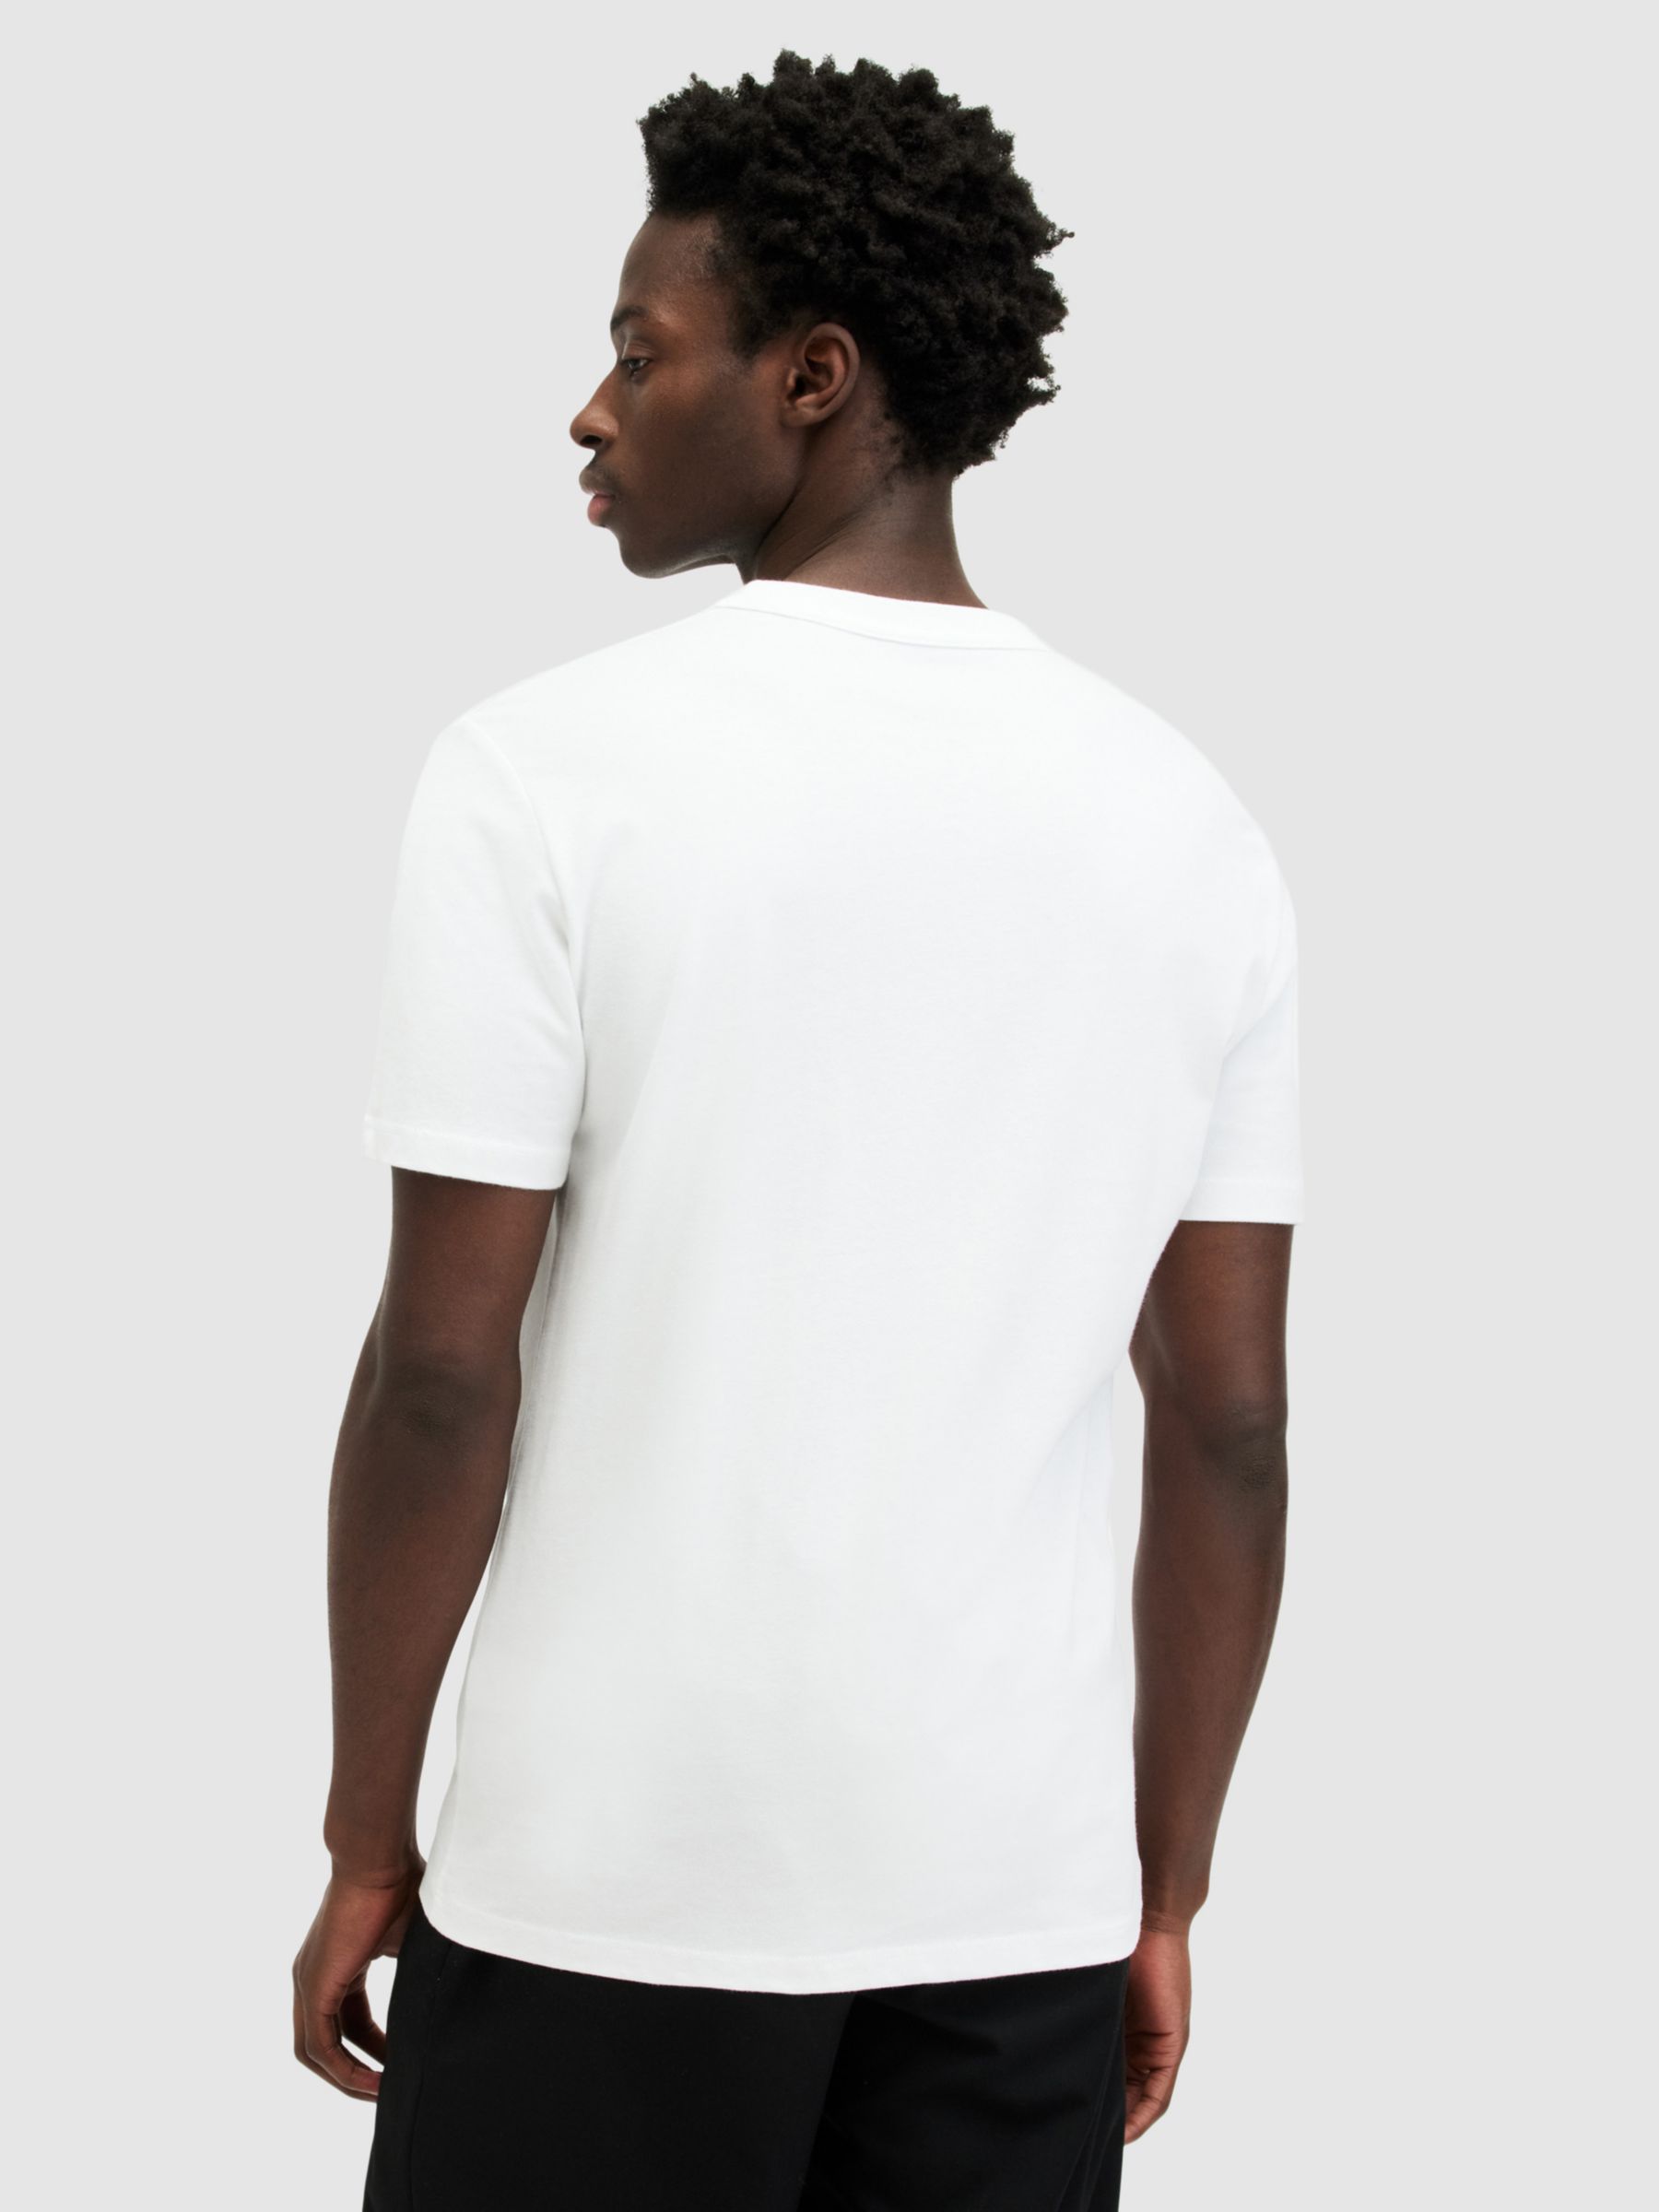 Buy AllSaints Brace Tonic Crew Neck T-Shirt Online at johnlewis.com